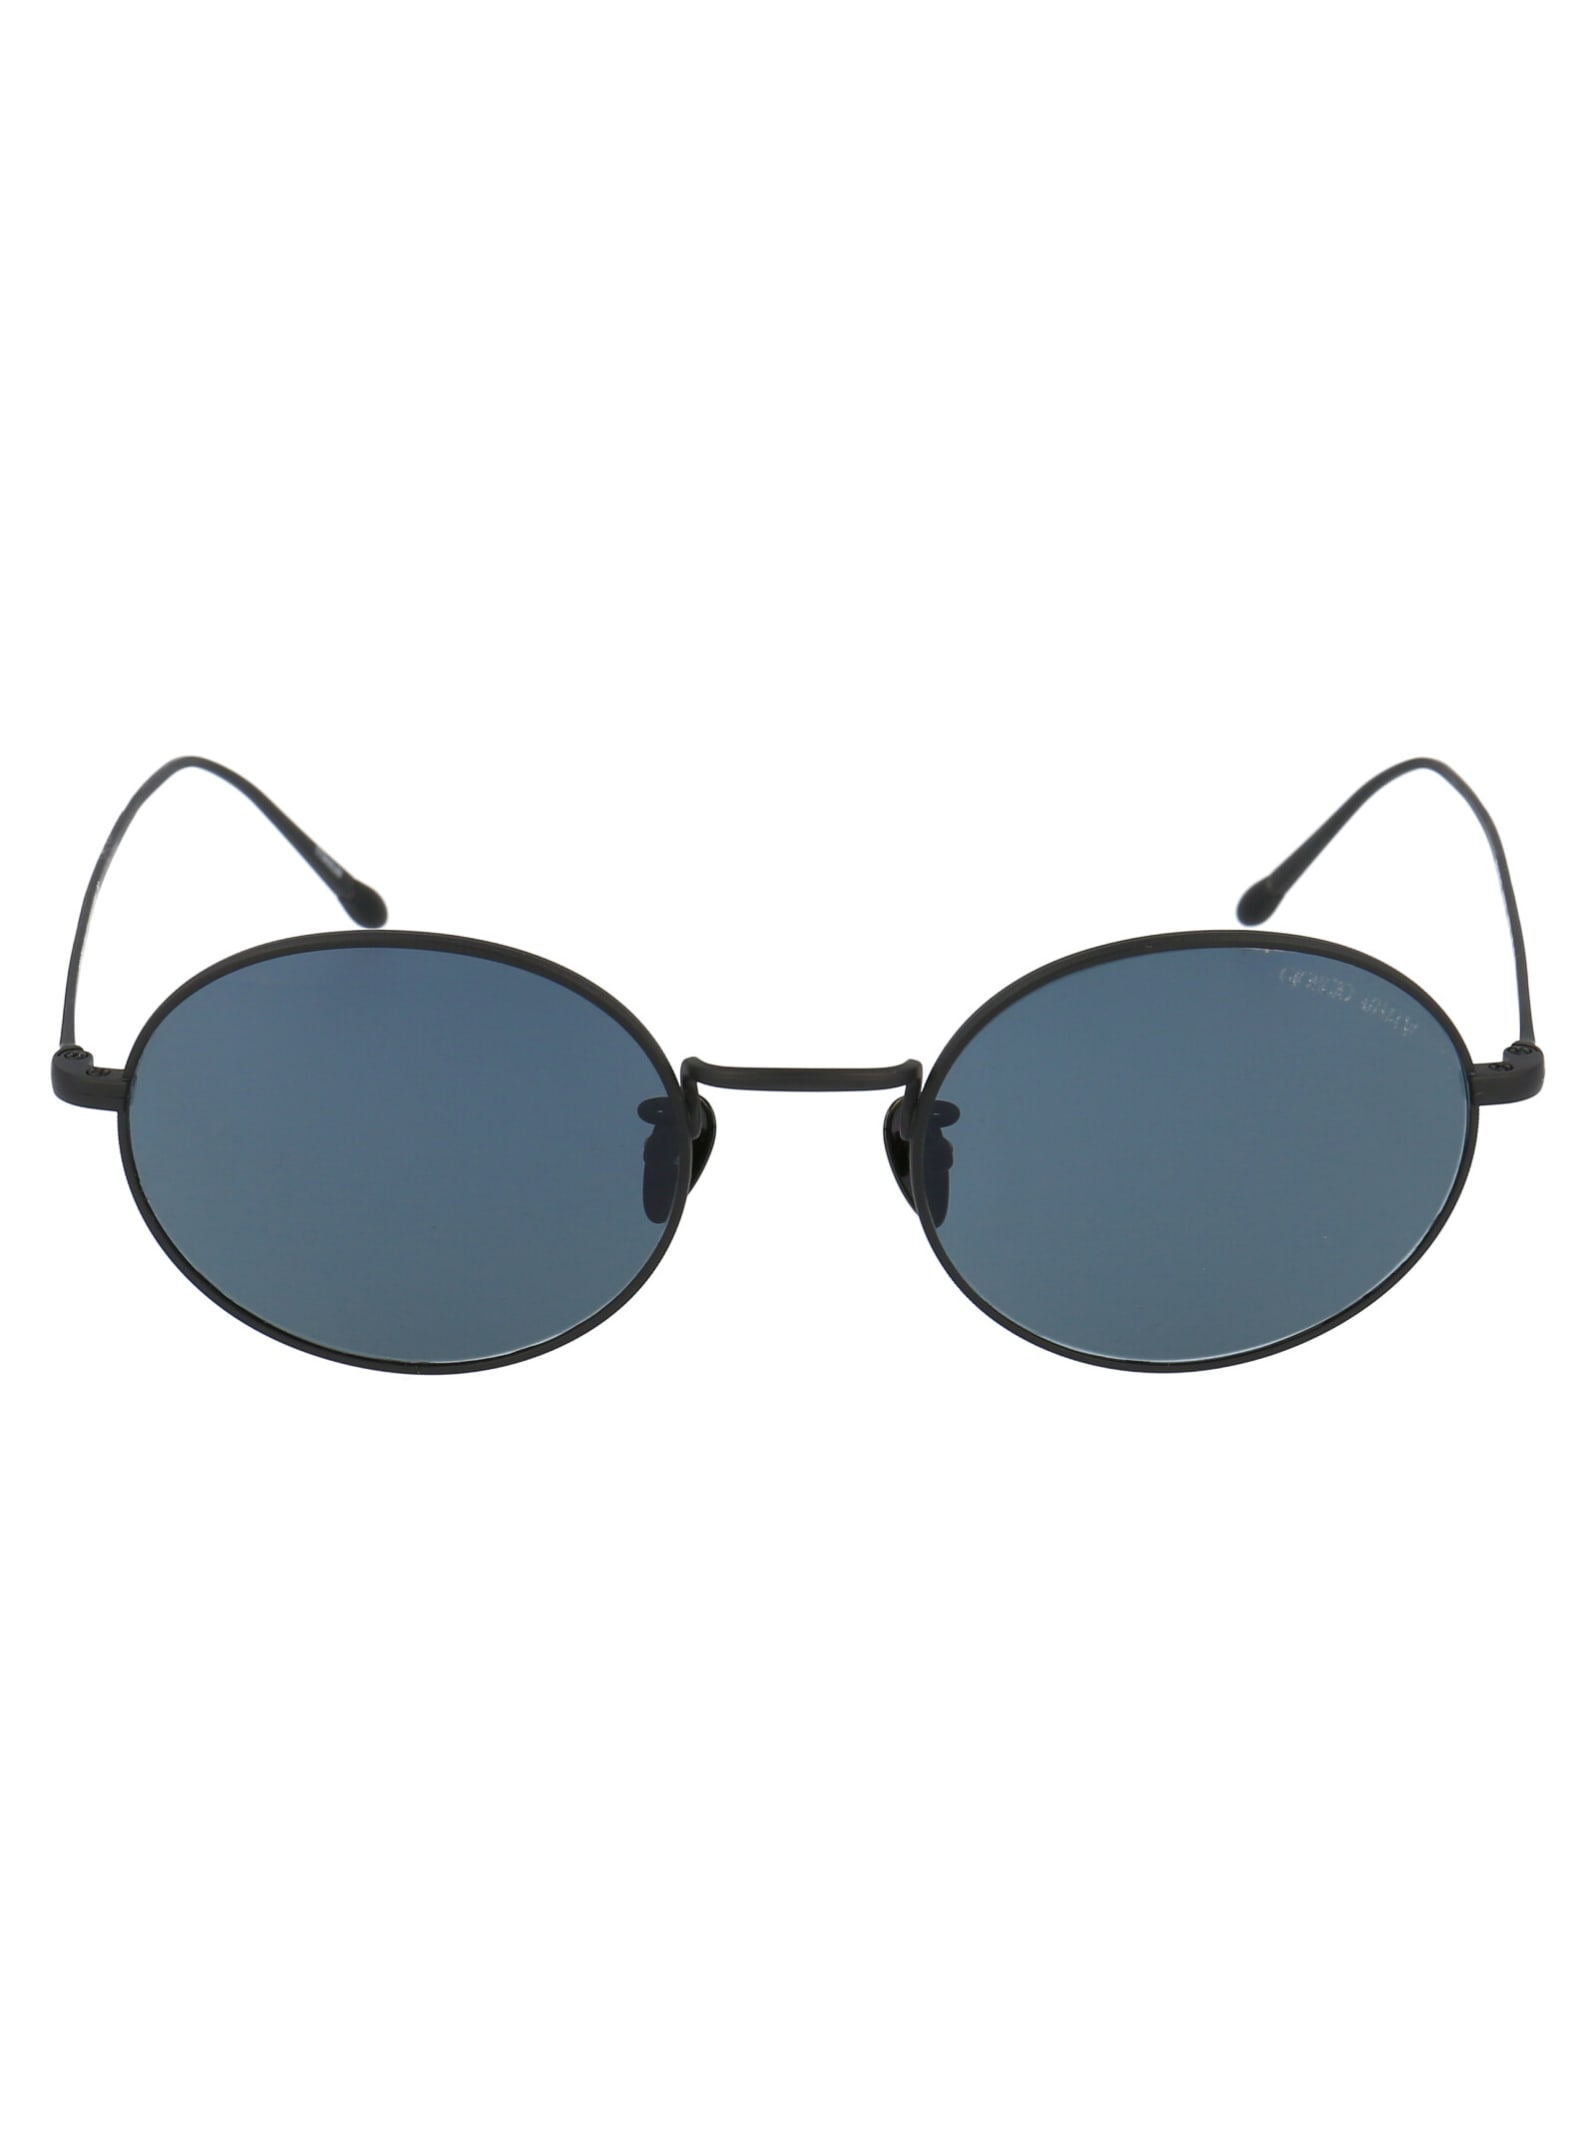 Giorgio Armani 0ar5097st Sunglasses